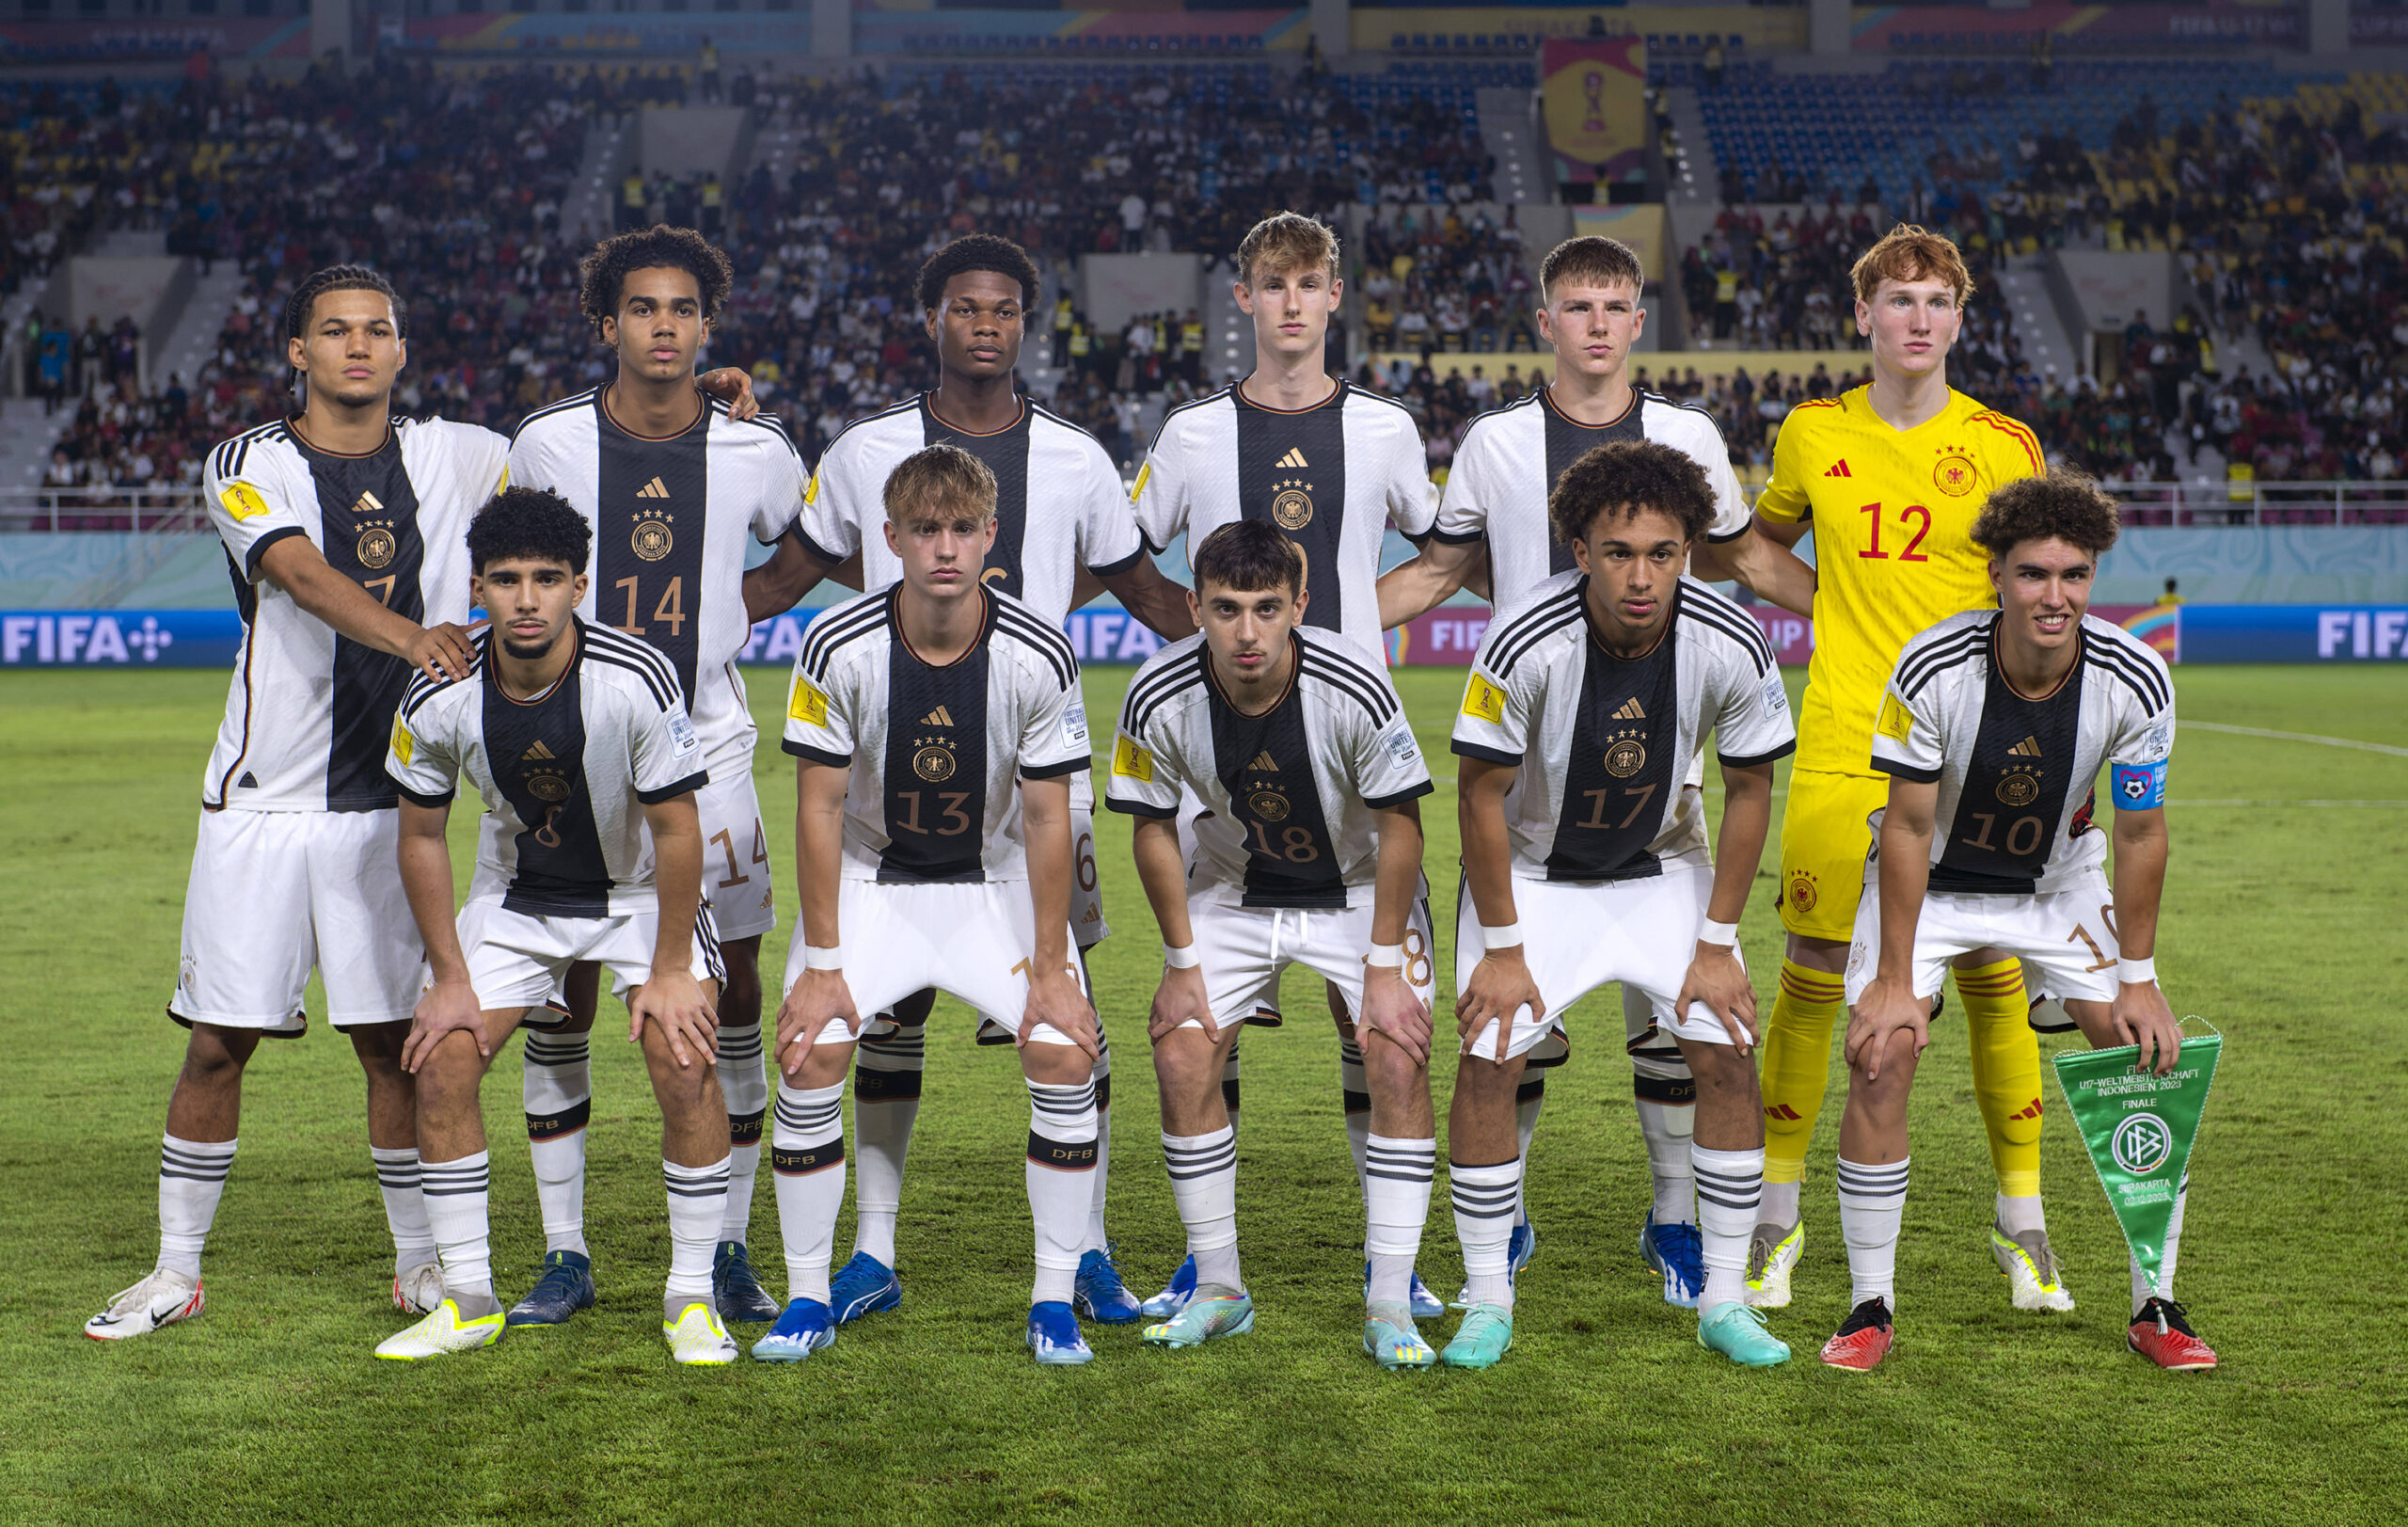 Mannschaftsfoto der deutschen U17 vor dem WM-FInale